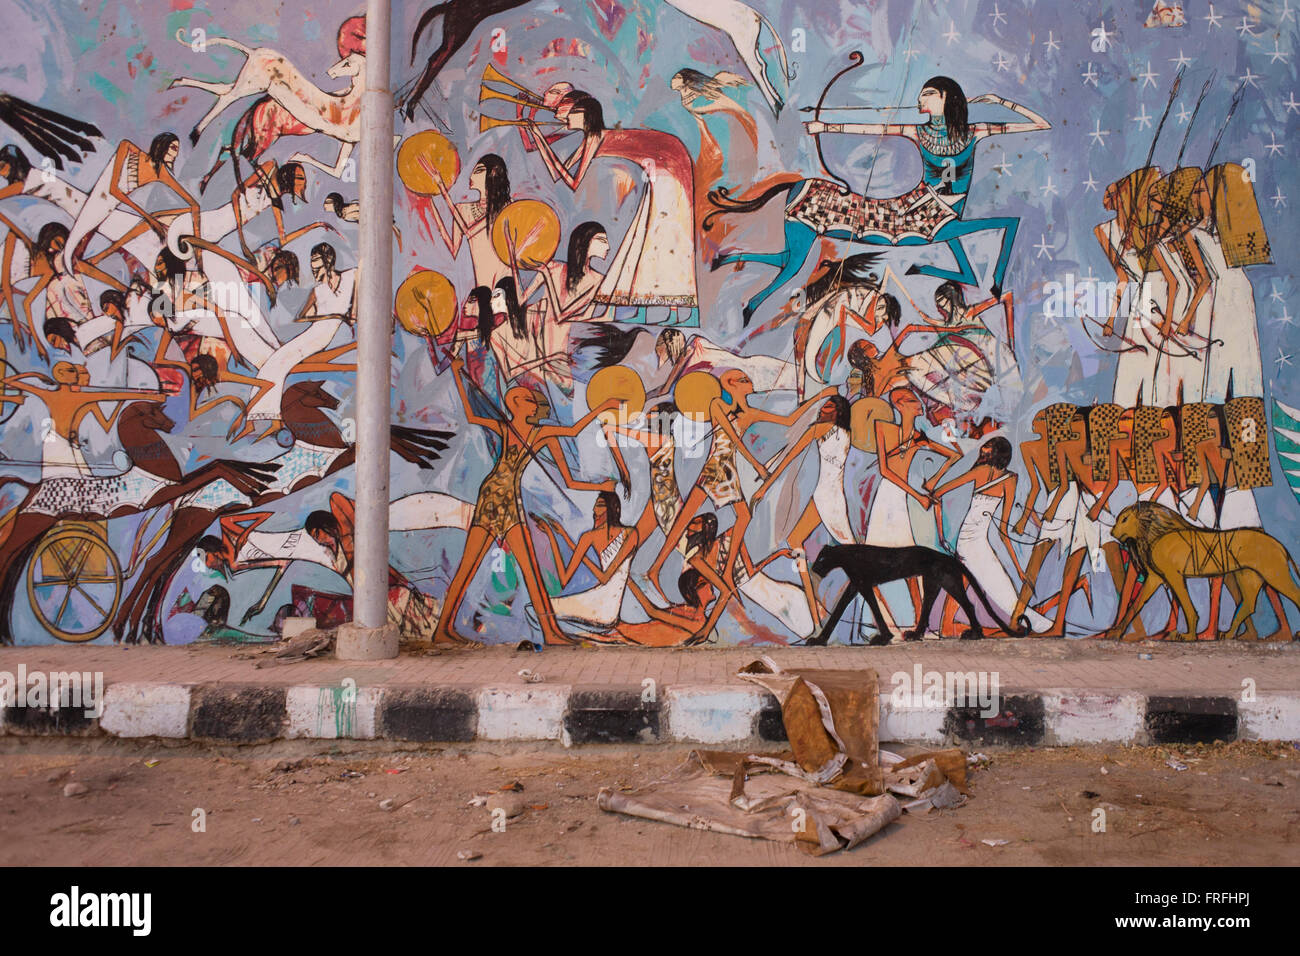 Moderne hieroglyphischen Kunstwerke gemalt an der Wand des lokalen Wasteground im Dorf Gezirat auf der Westbank von Luxor, Nil Senke, Ägypten. Die Bilder zeigen die Schlacht von Kadesch um 1274 v. Chr. zwischen den Kräften des ägyptischen Reiches unter Ramses II und des hethitischen Reiches unter Muwatalli II der Stadt Kadesch am Fluss Orontes stattfand. Der Kampf ist die früheste Kampf in der aufgezeichneten Geschichte für die Details der Taktiken und Formationen bekannt sind. Es war wohl die größte Chariot Schlacht jemals gekämpft, an denen vielleicht 5.000 – 6.000 Streitwagen. Stockfoto